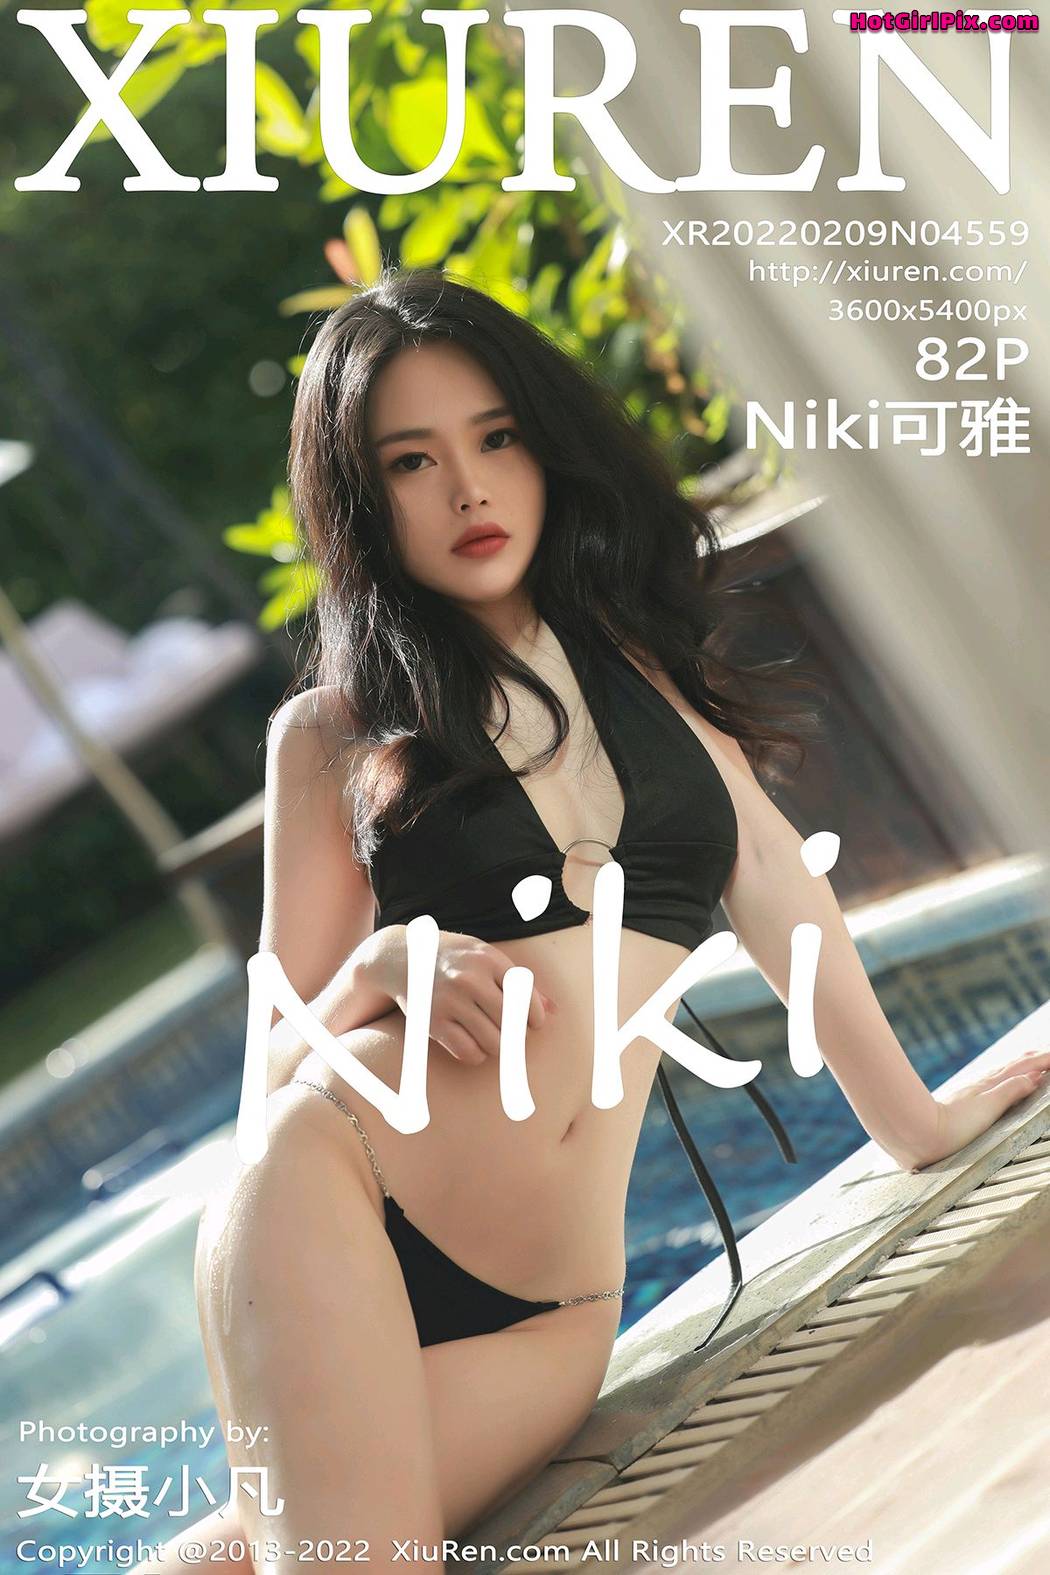 [XIUREN] No.4559 Niki可雅 Cover Photo